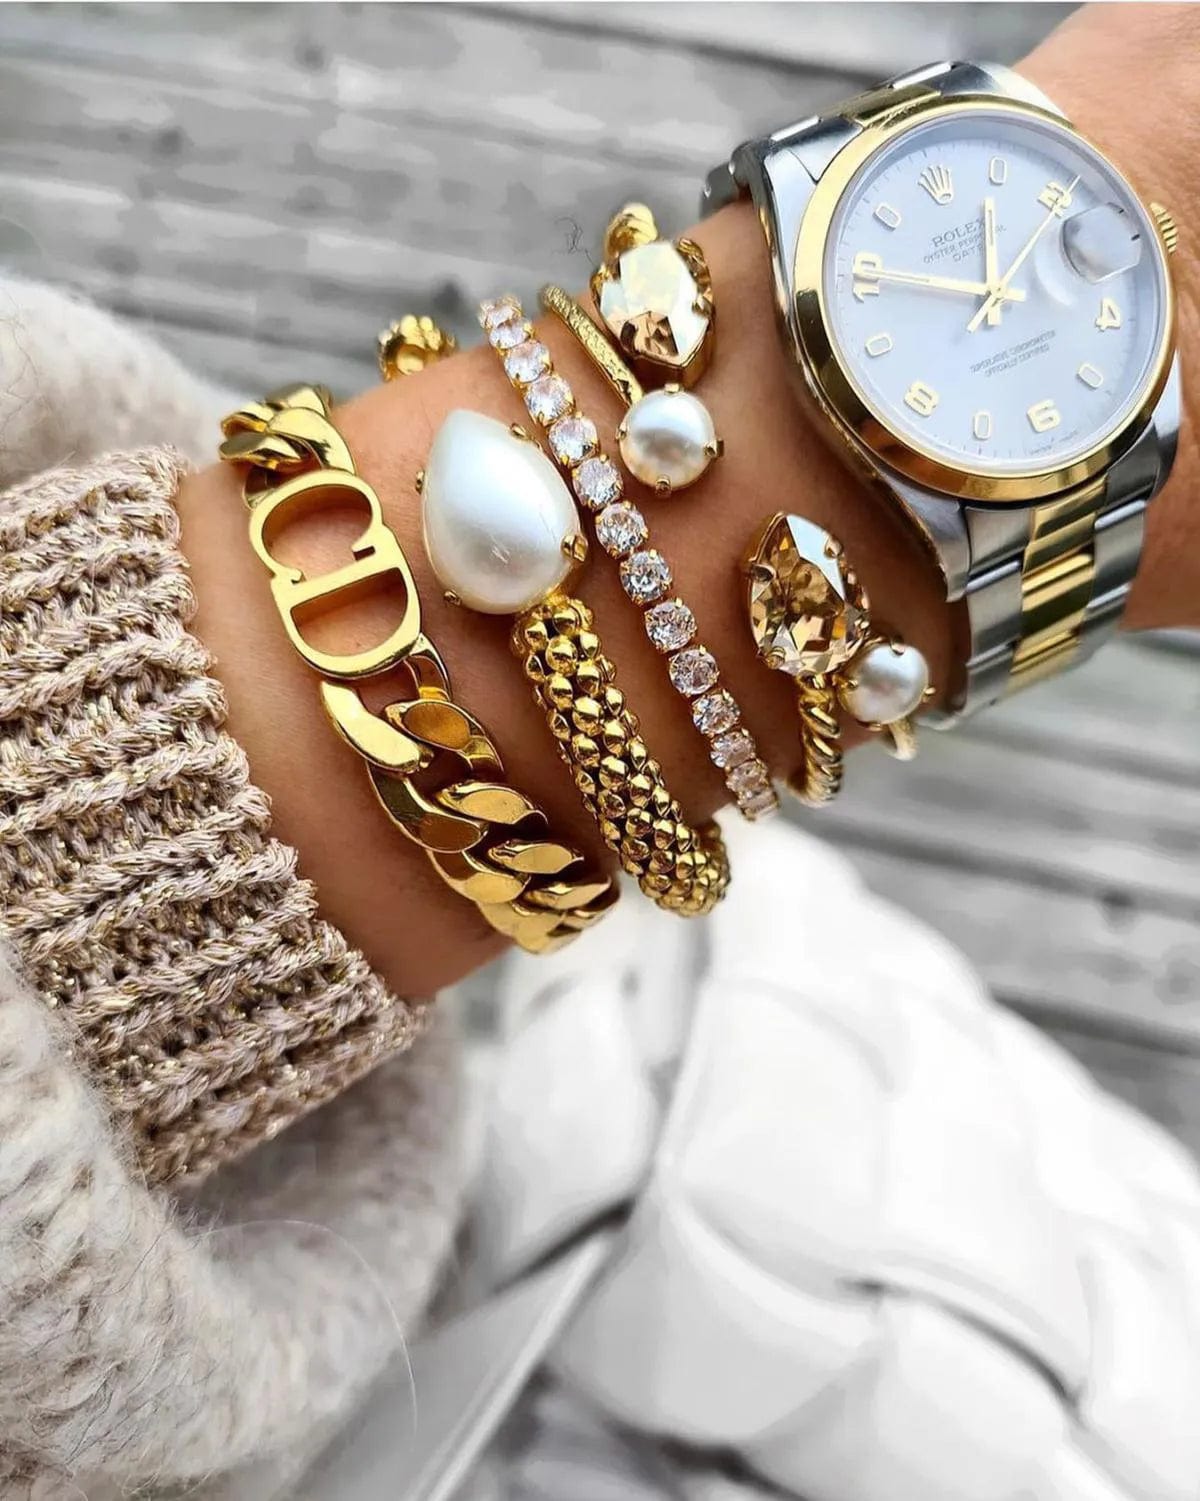 Caroline Svedbom armbånd Zara bracelet - crystal